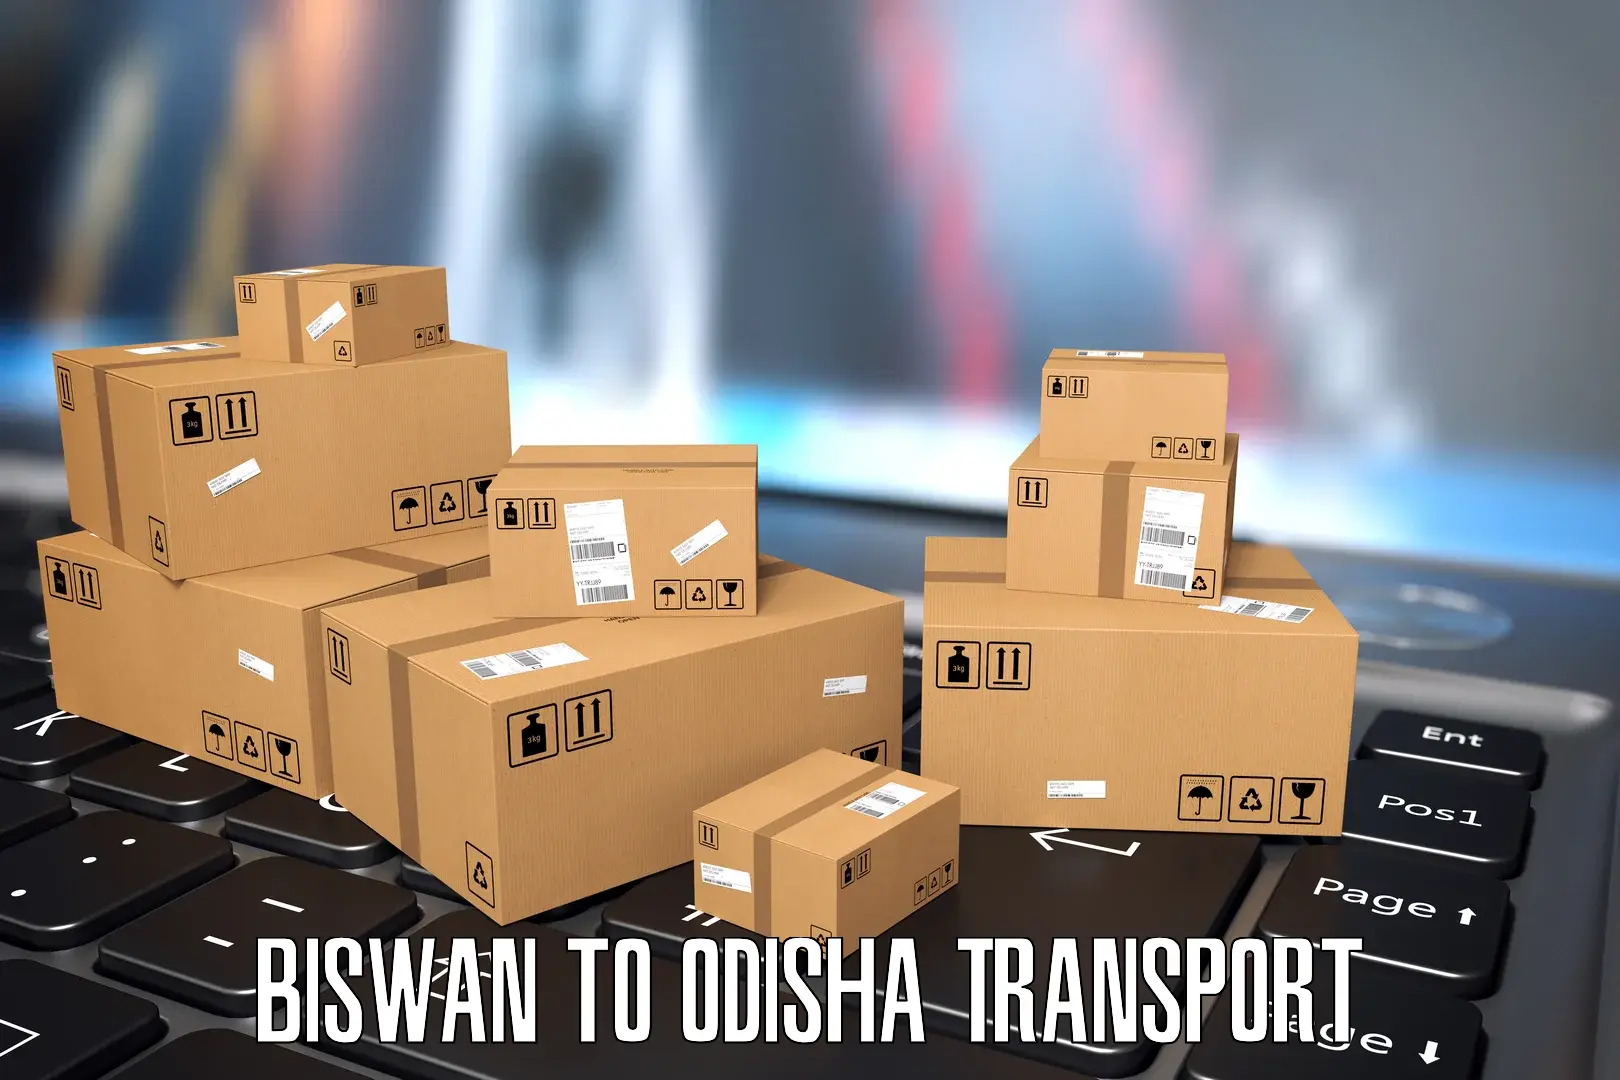 Express transport services Biswan to Baleswar